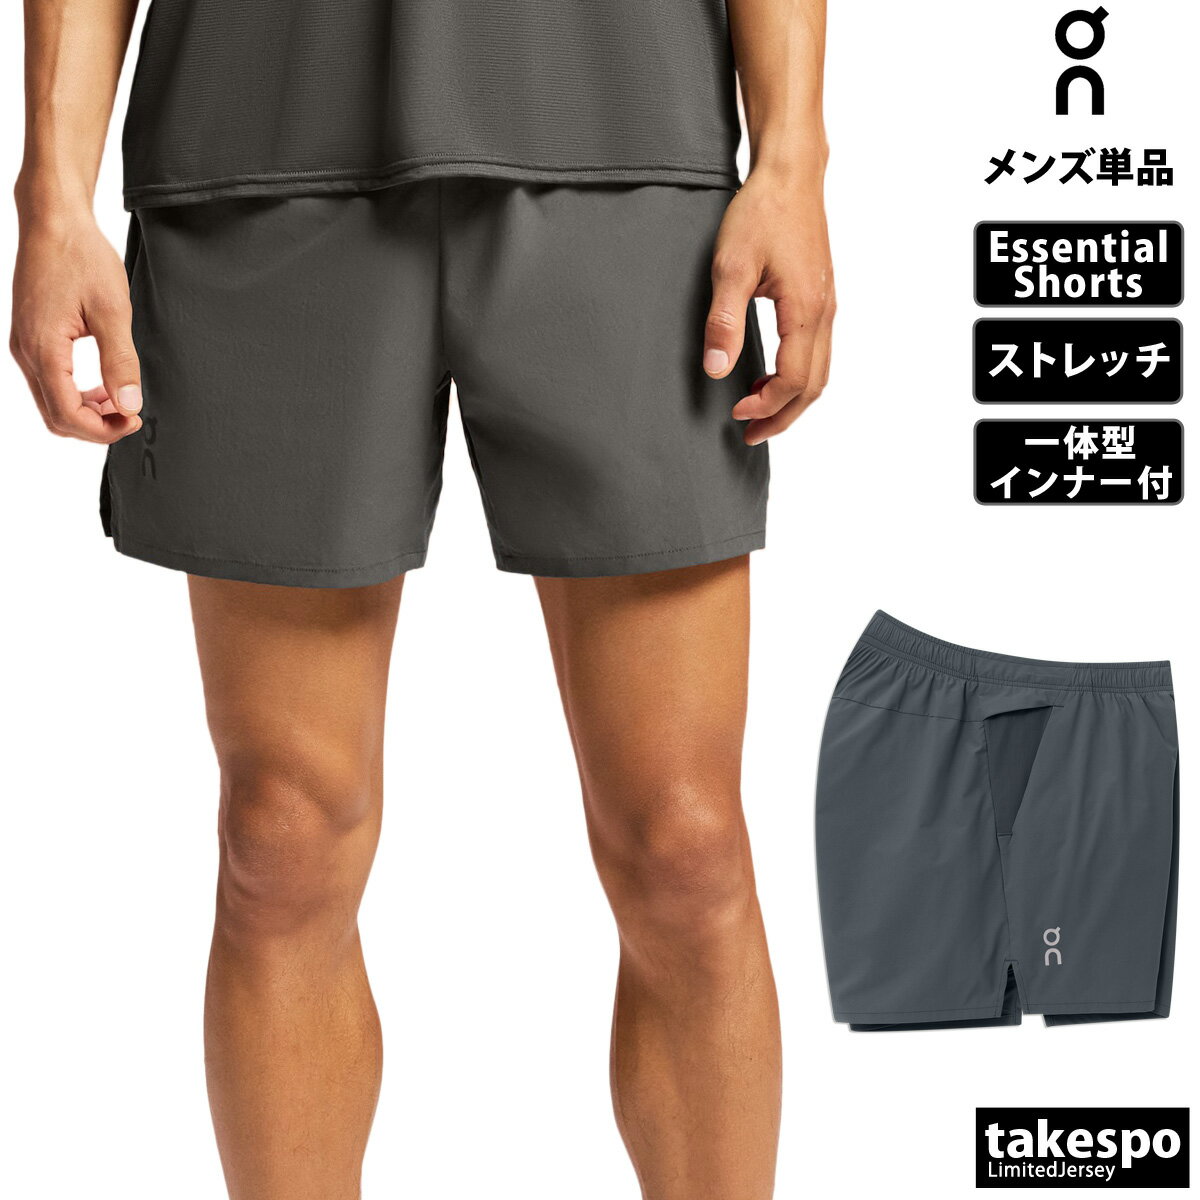 オン Essential Shorts エッセンシャルショーツ 新作 ショートパンツ 下 メンズ On ストレッチ トレーニング ランニング 一体型インナー 1ME11520345M 灰色 グレー| 大きいサイズ 有 スポーツウェア トレーニングウェア